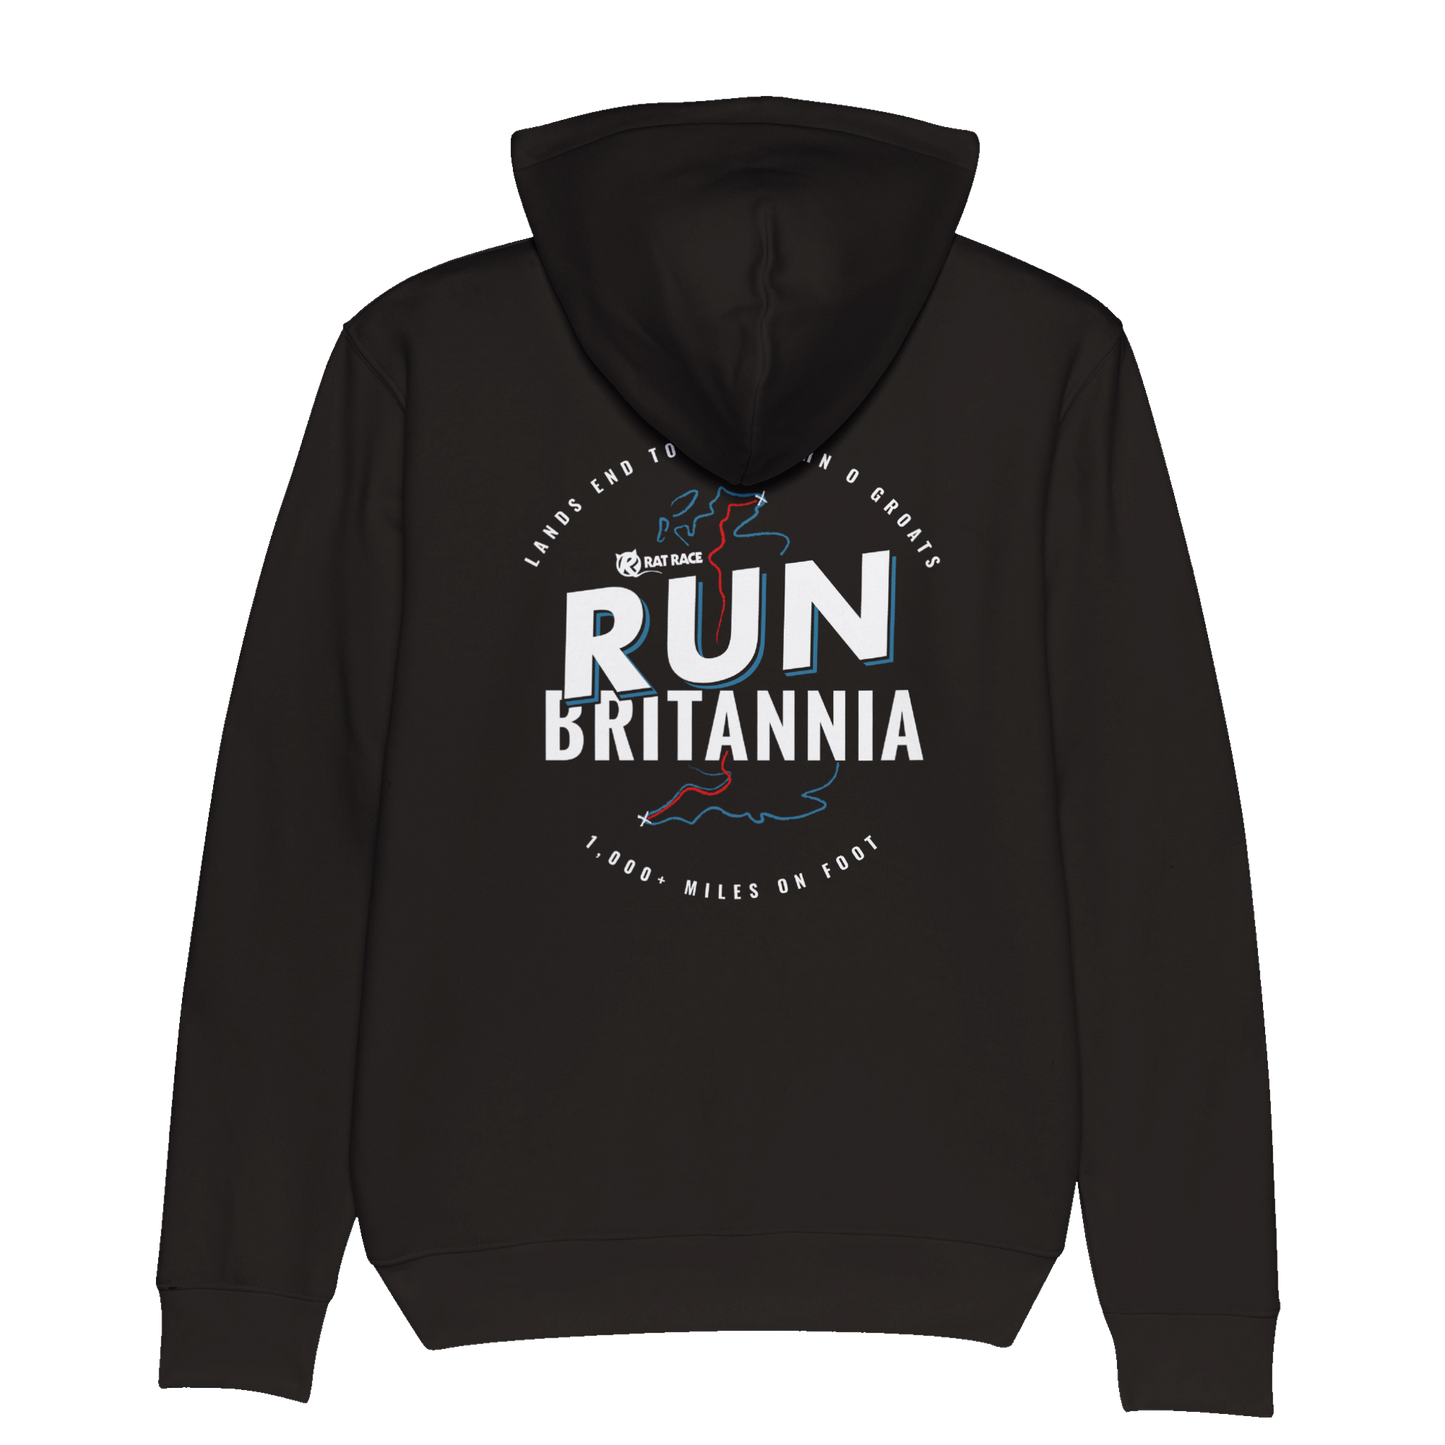 Rat Race Run Britannia Organic Unisex Hoodie - Black